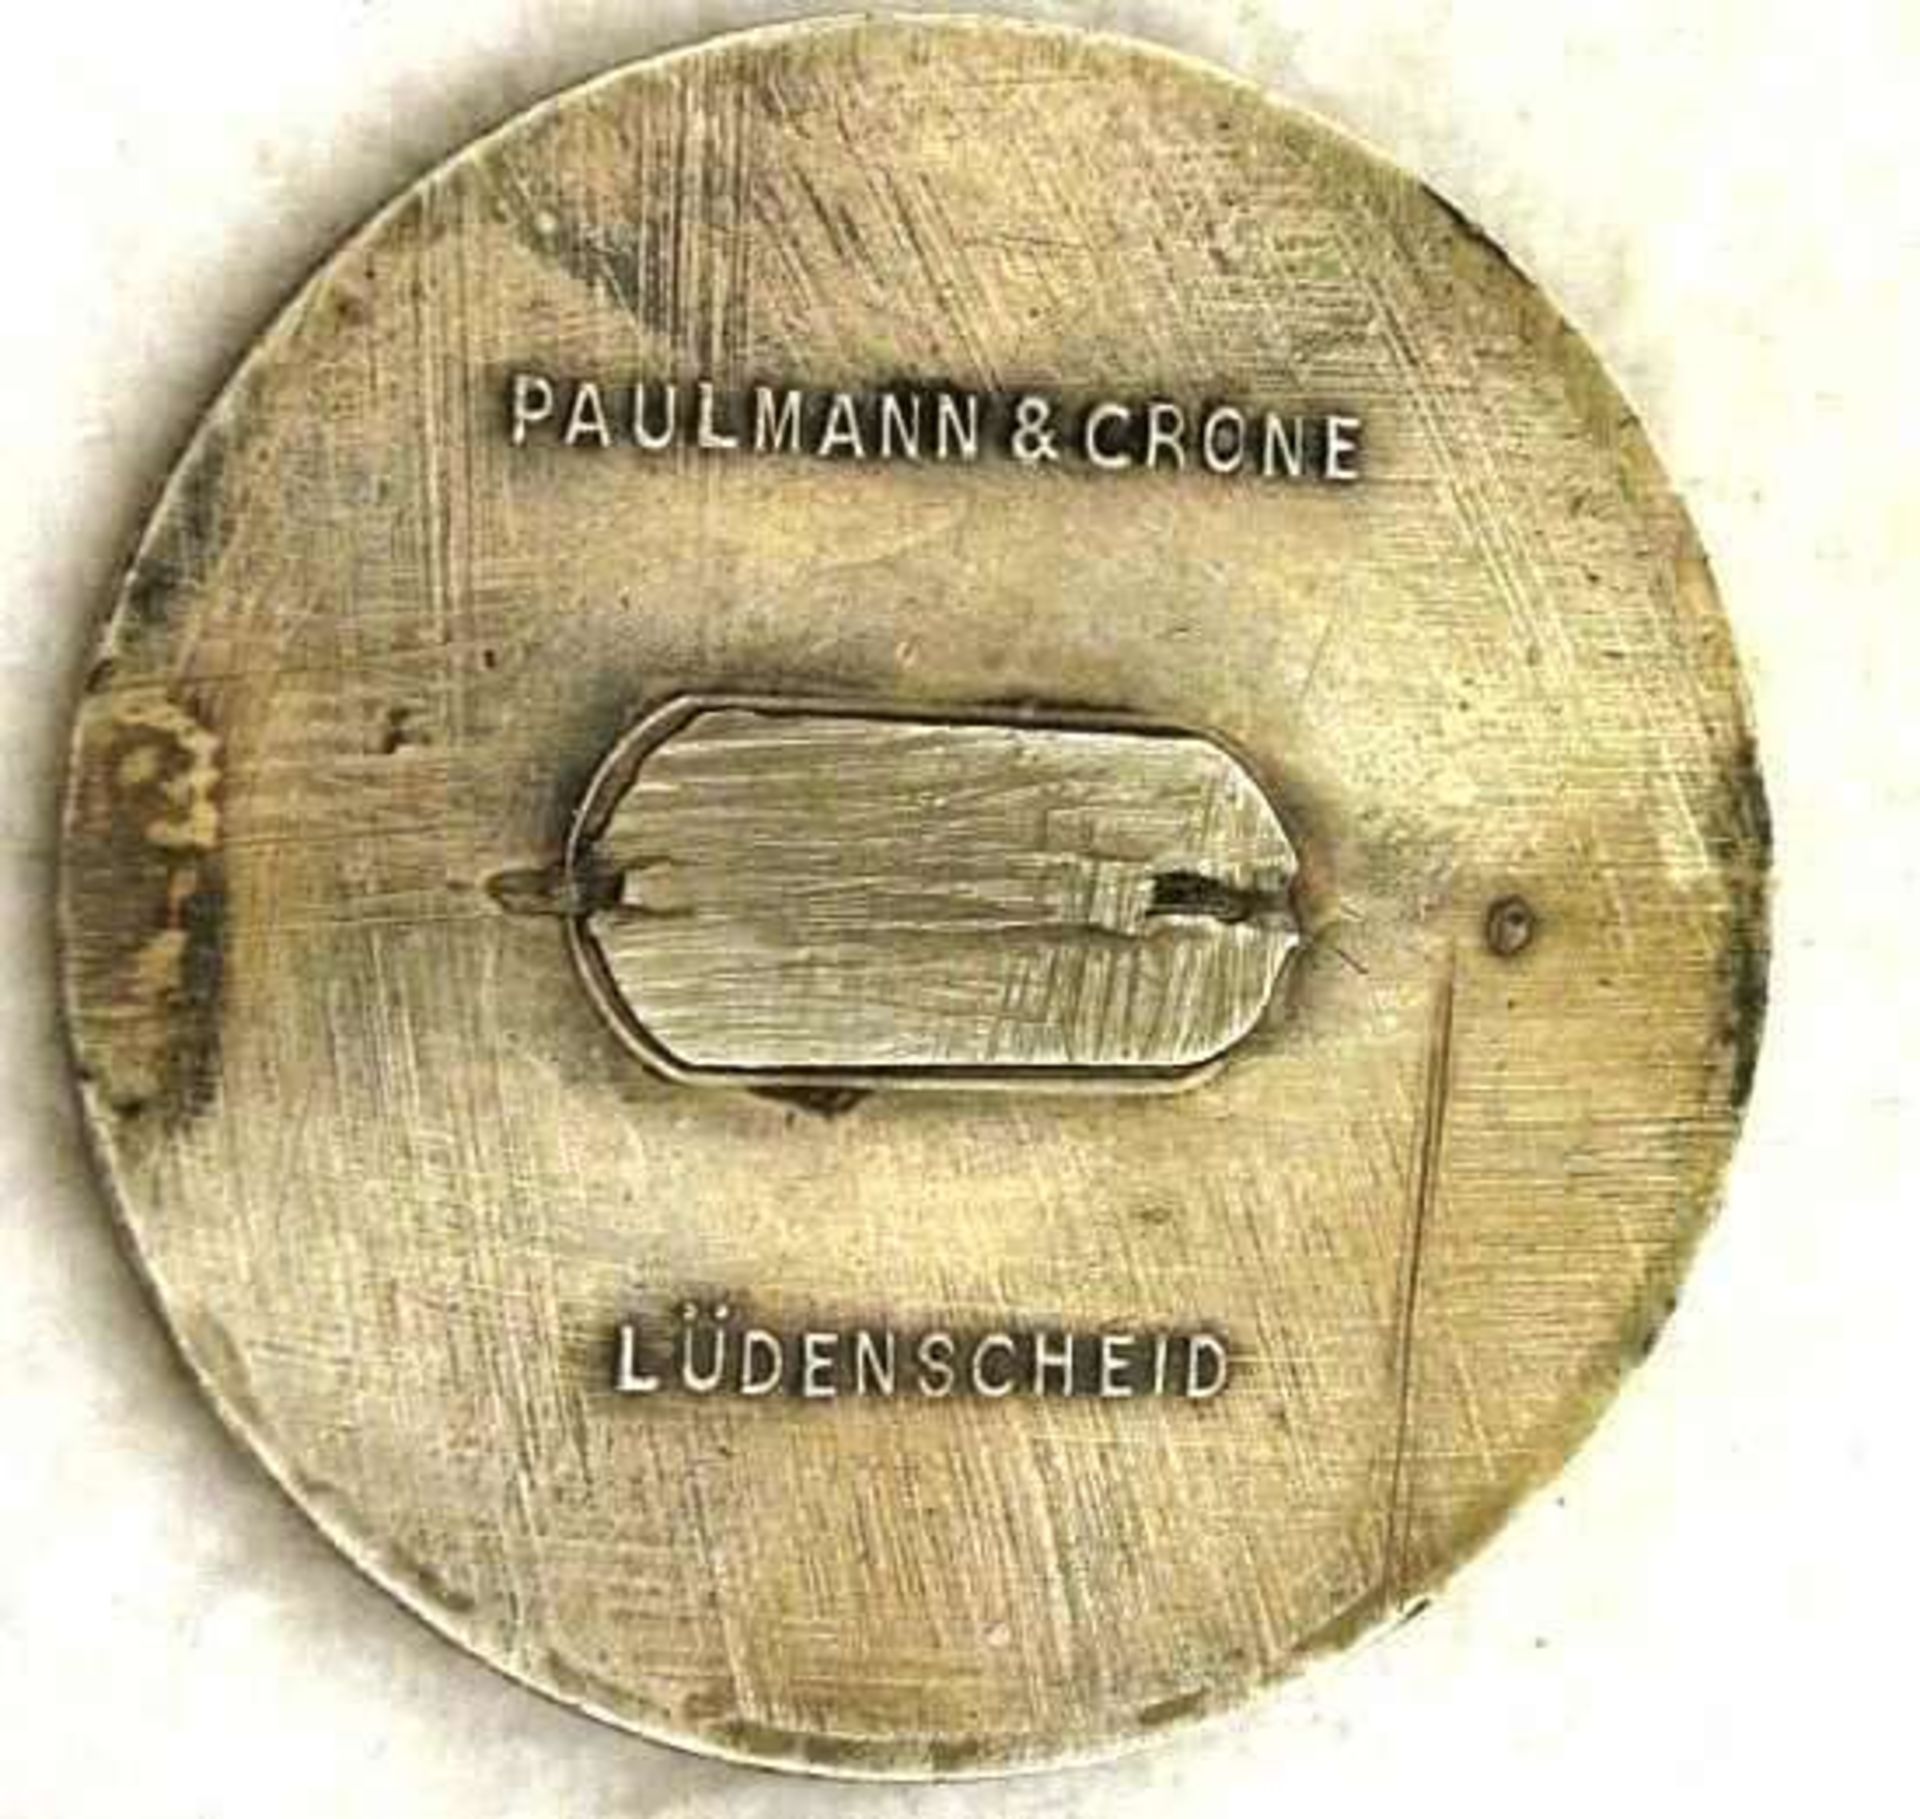 1 Brosche "Hitlers Dank Gau Unterfranken 1933" Hersteller Paulmann a Crone Lüdenscheid. Nadel - Bild 2 aus 2